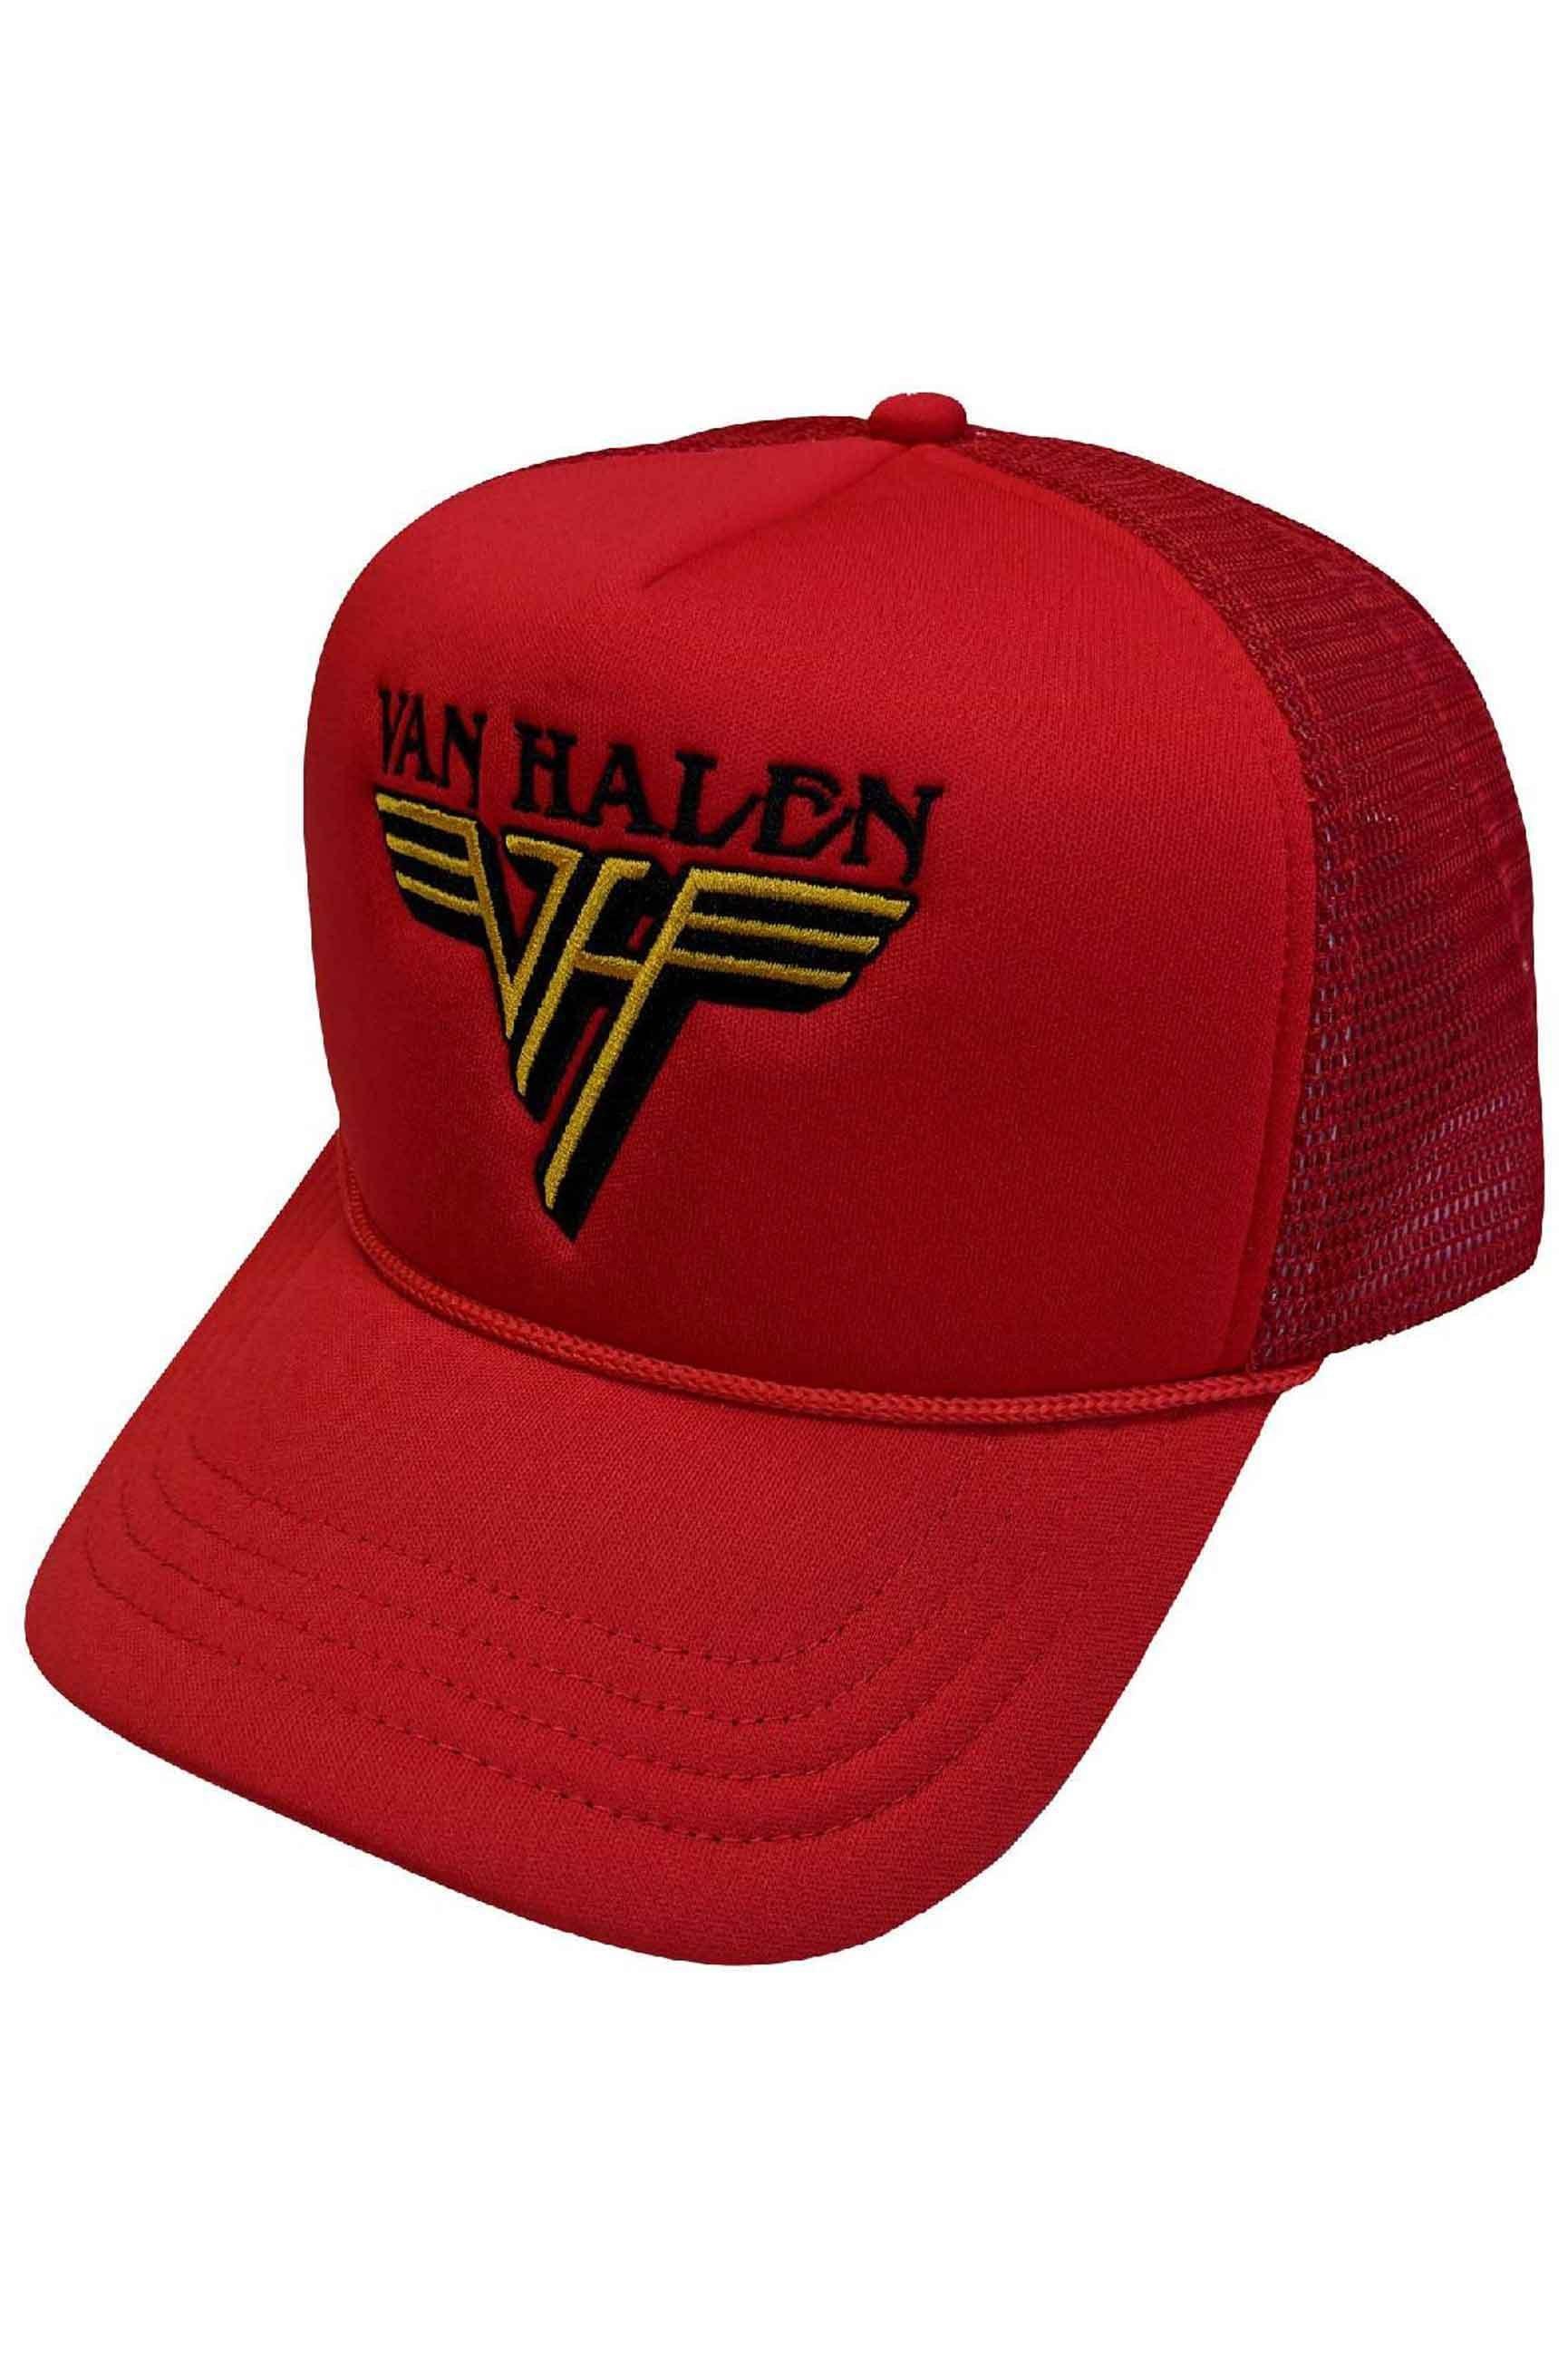 Бейсбольная кепка Trucker с текстовым ремешком и логотипом Van Halen, красный van halen van halen remastered 180g limited edition